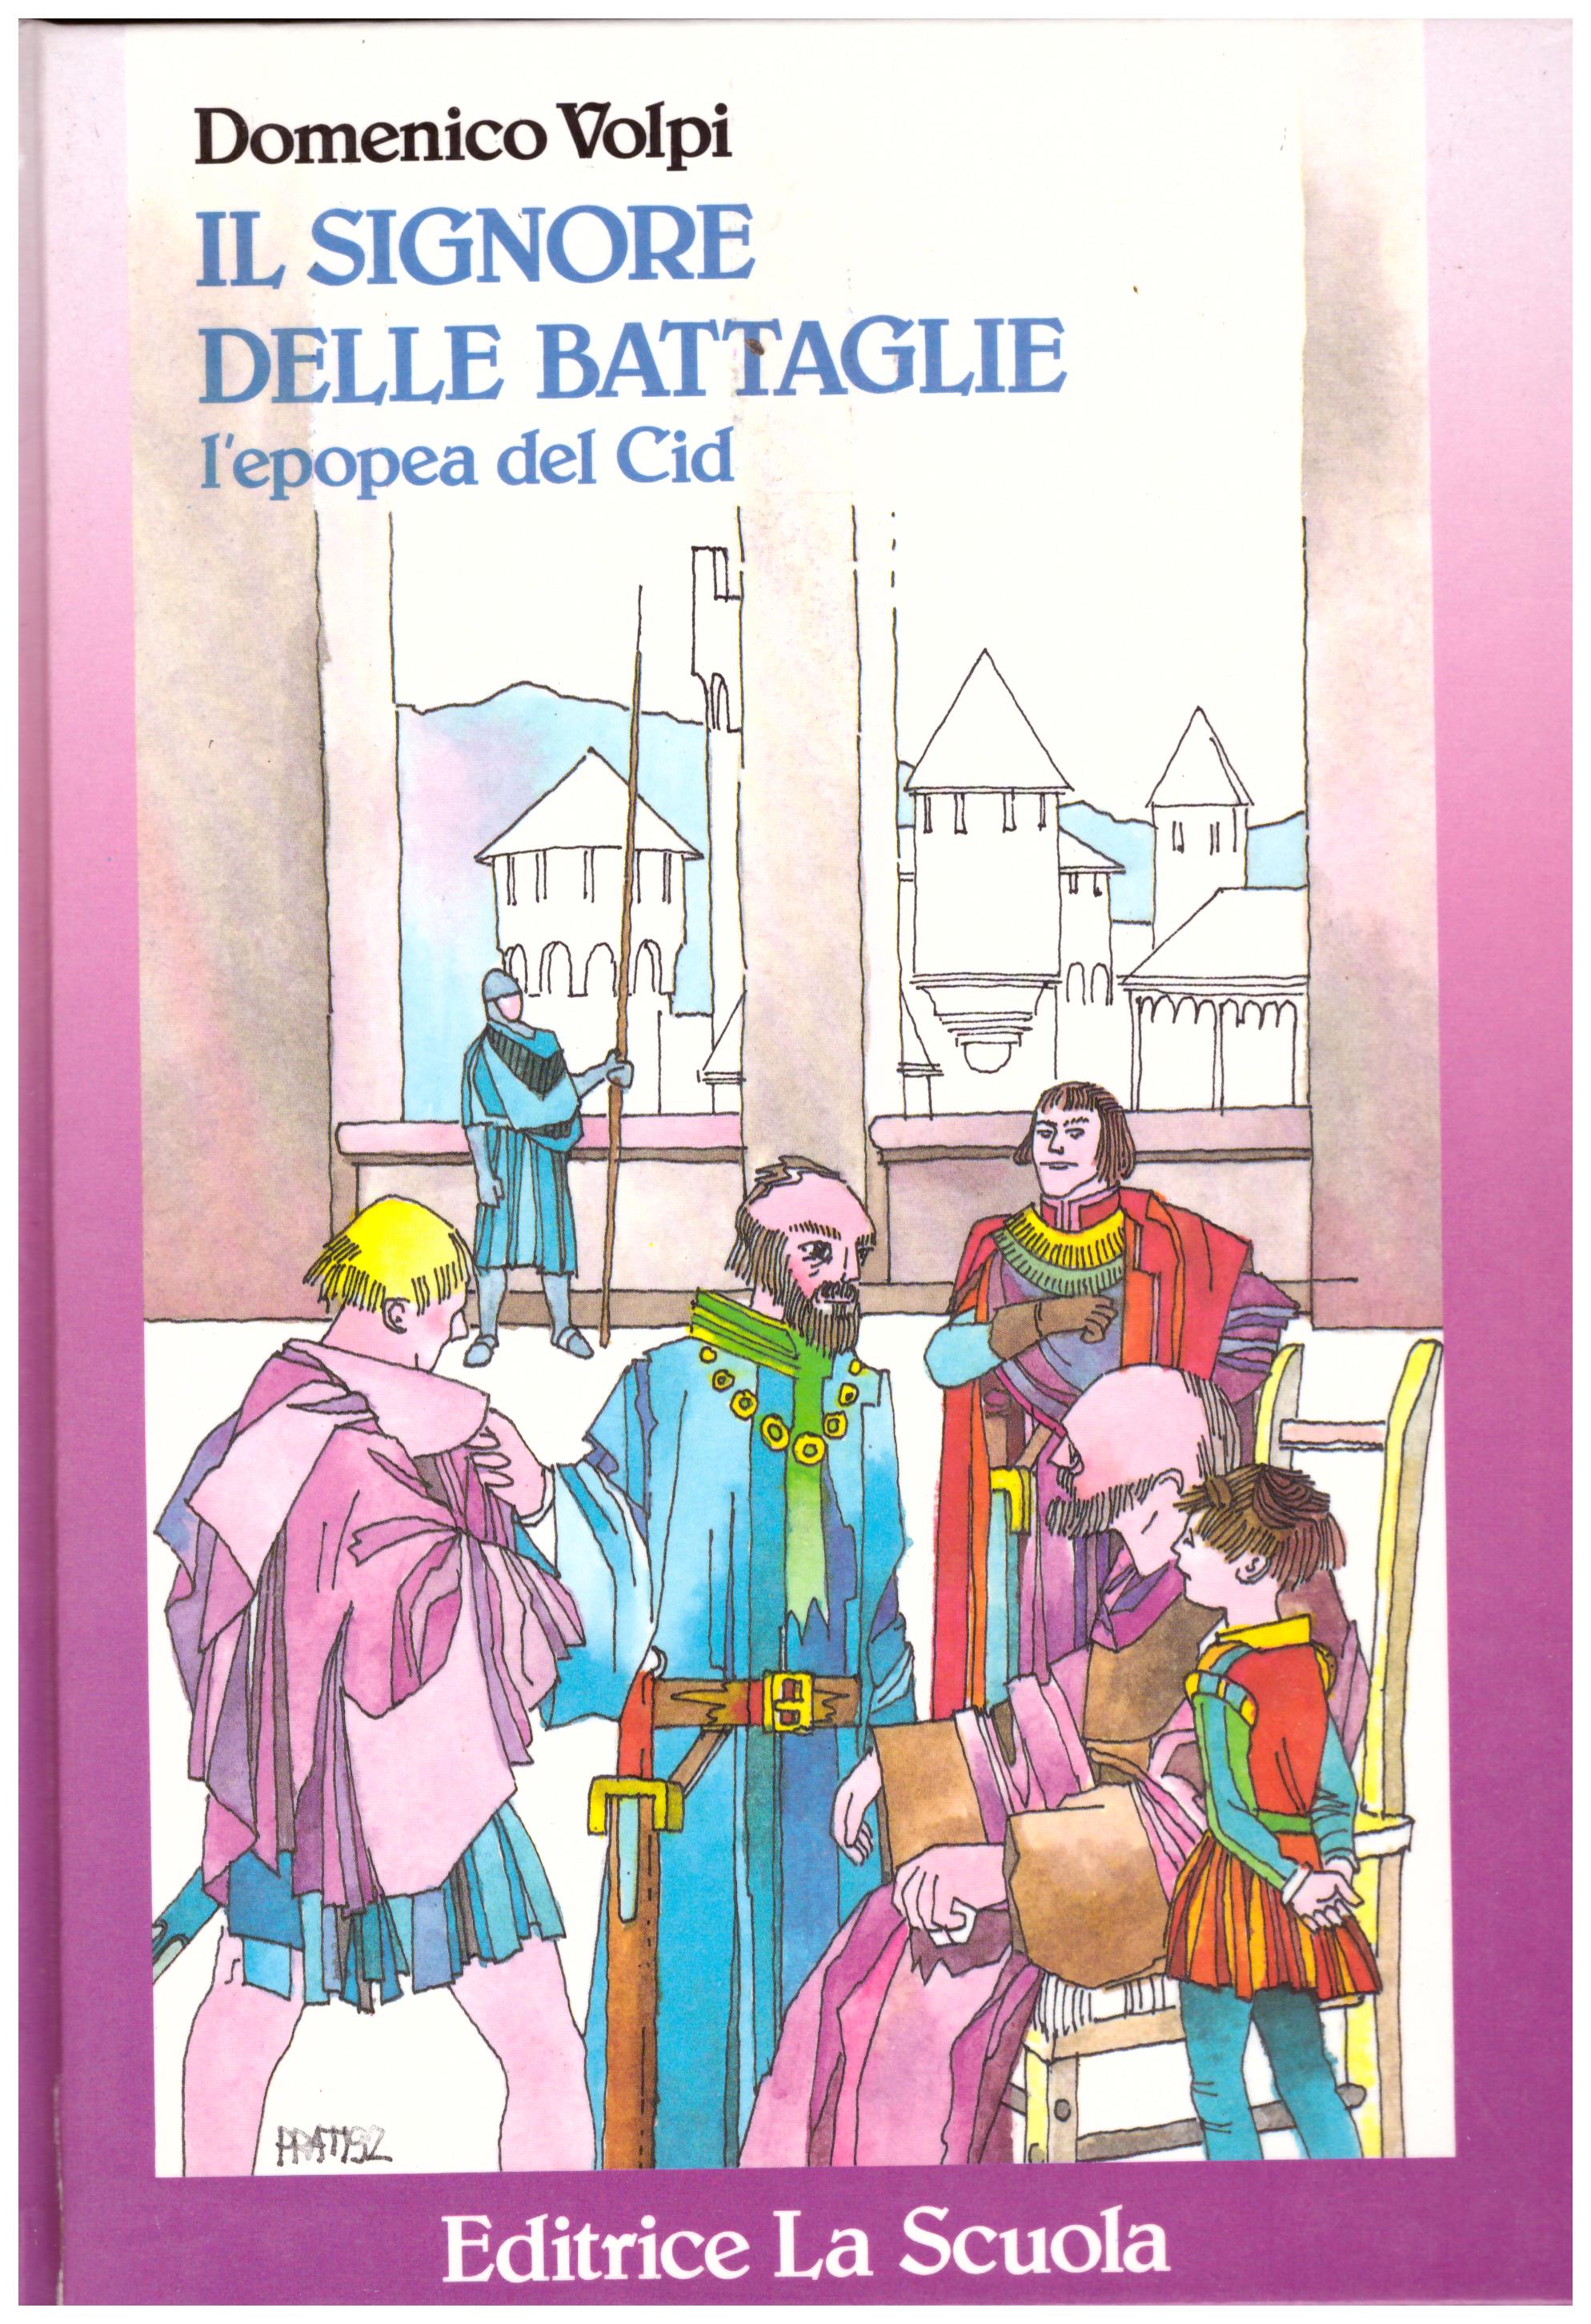 Titolo: Il signore delle battaglie, l'epopea del Cid Autore: Domenico Volpi Editore: editrice la scuola